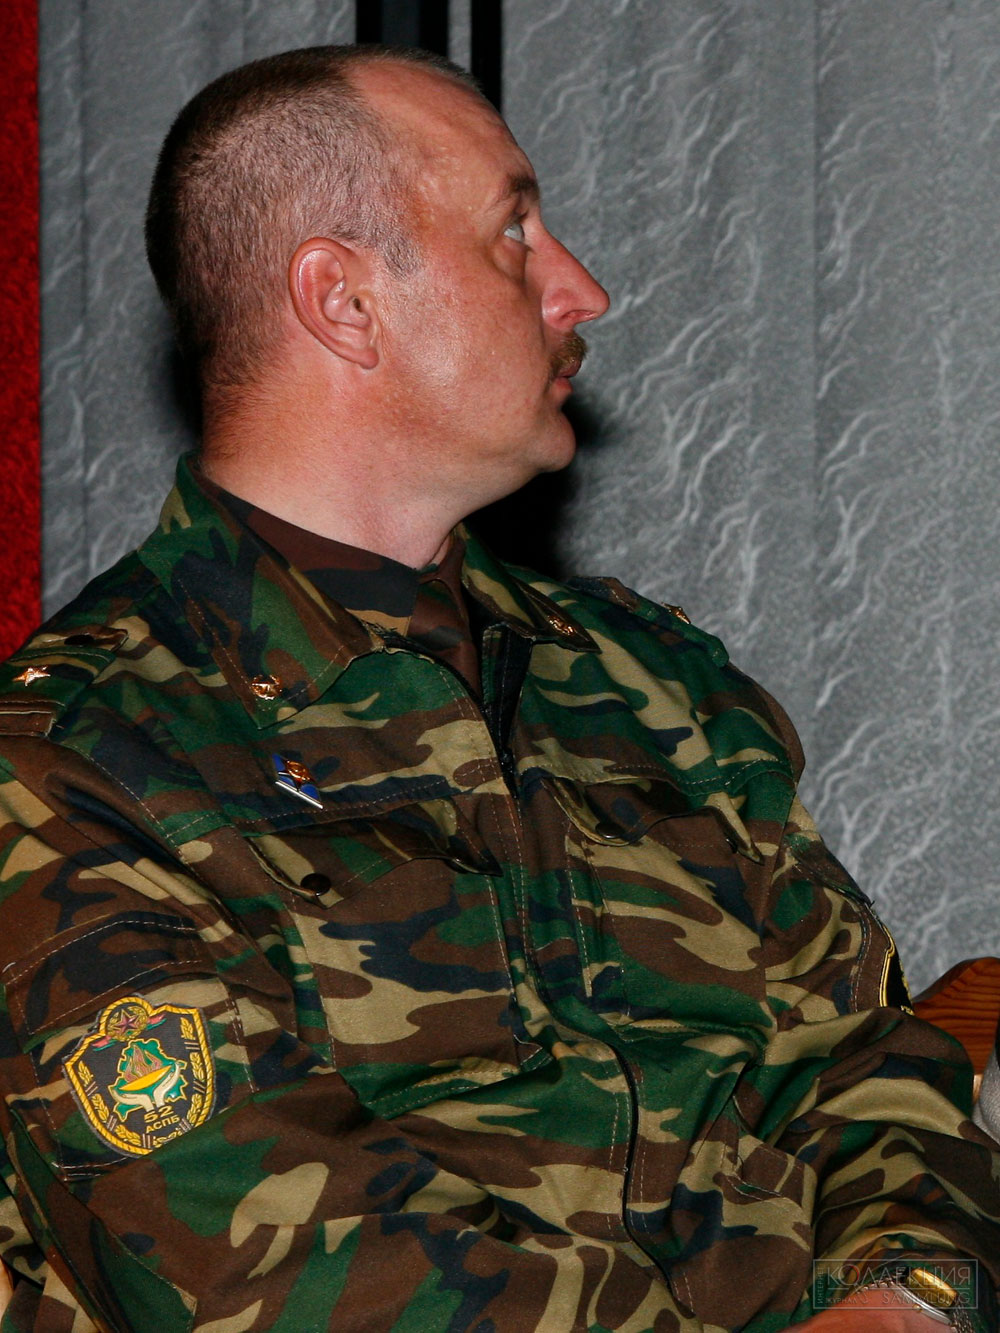 Майор Василий Витальевич Шинкевич с 2005 г. по 2017 г. заместитель командира батальона по идеологической работе. На рукаве к него пластизолевая нарукавная нашивка военнослужащего 52 оспб образца 2002 года. Фото 2009 года